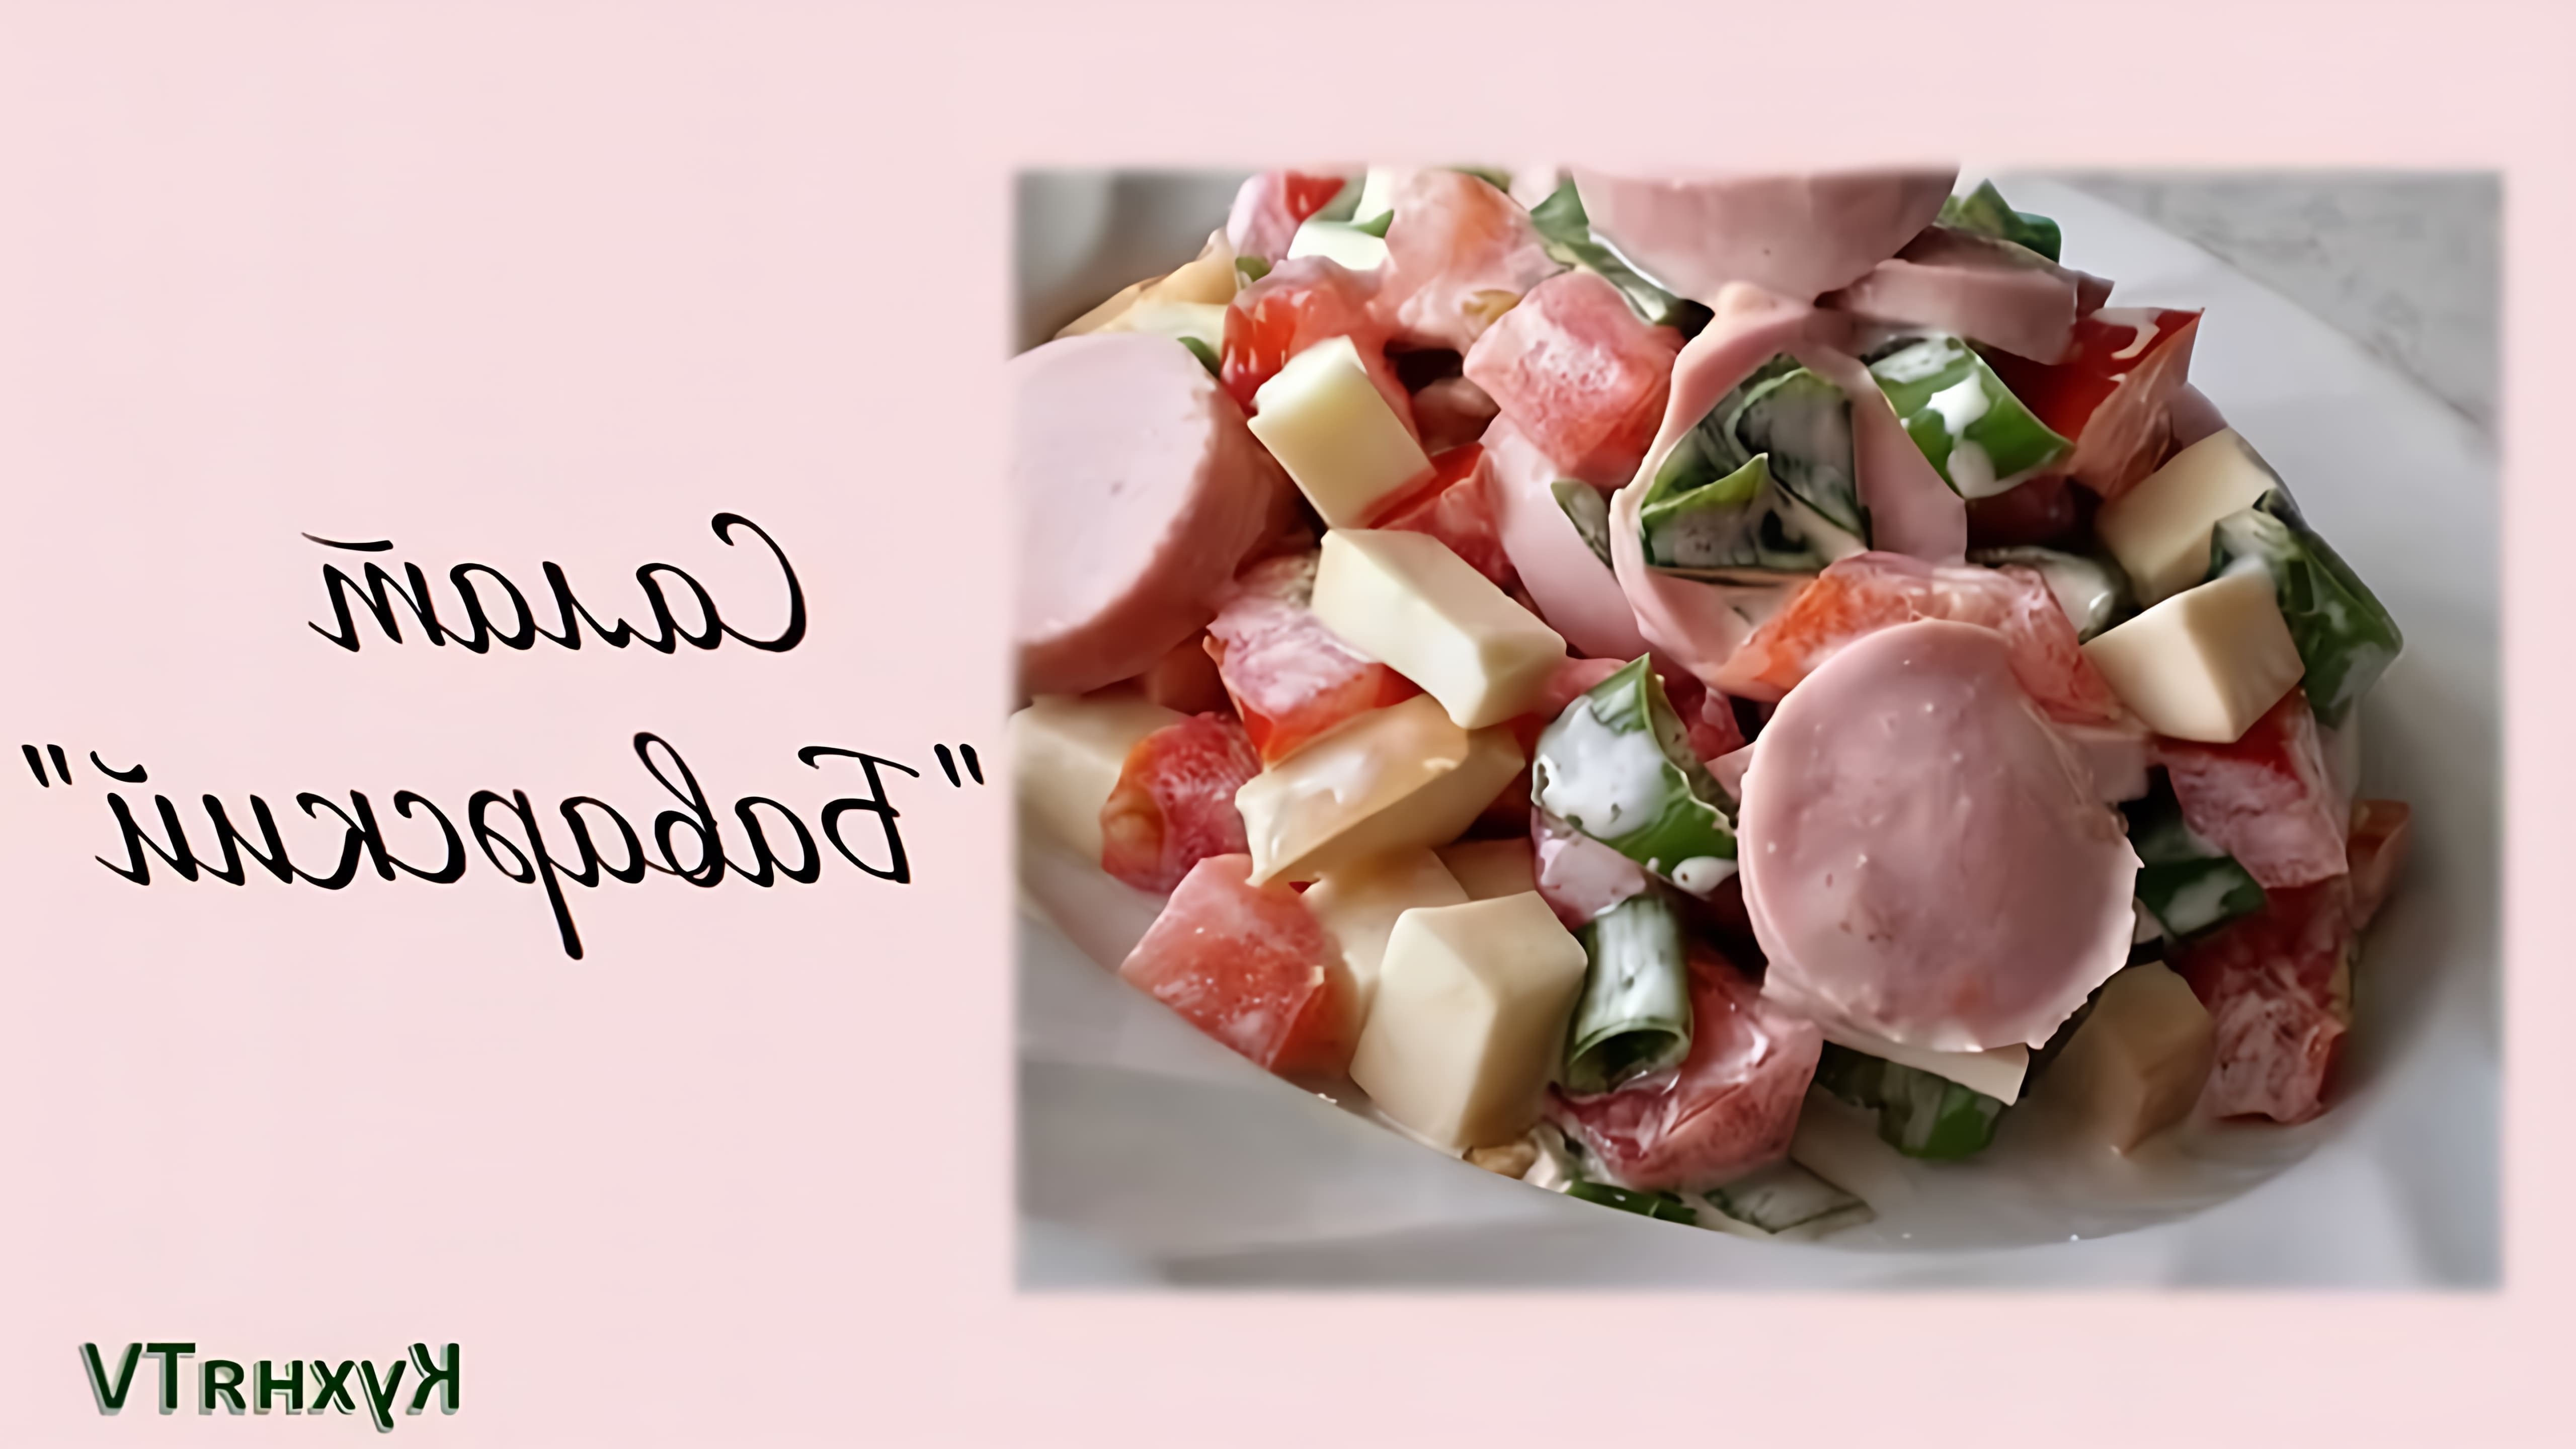 Салат Баварский - это вкусное и простое блюдо, которое можно приготовить в домашних условиях